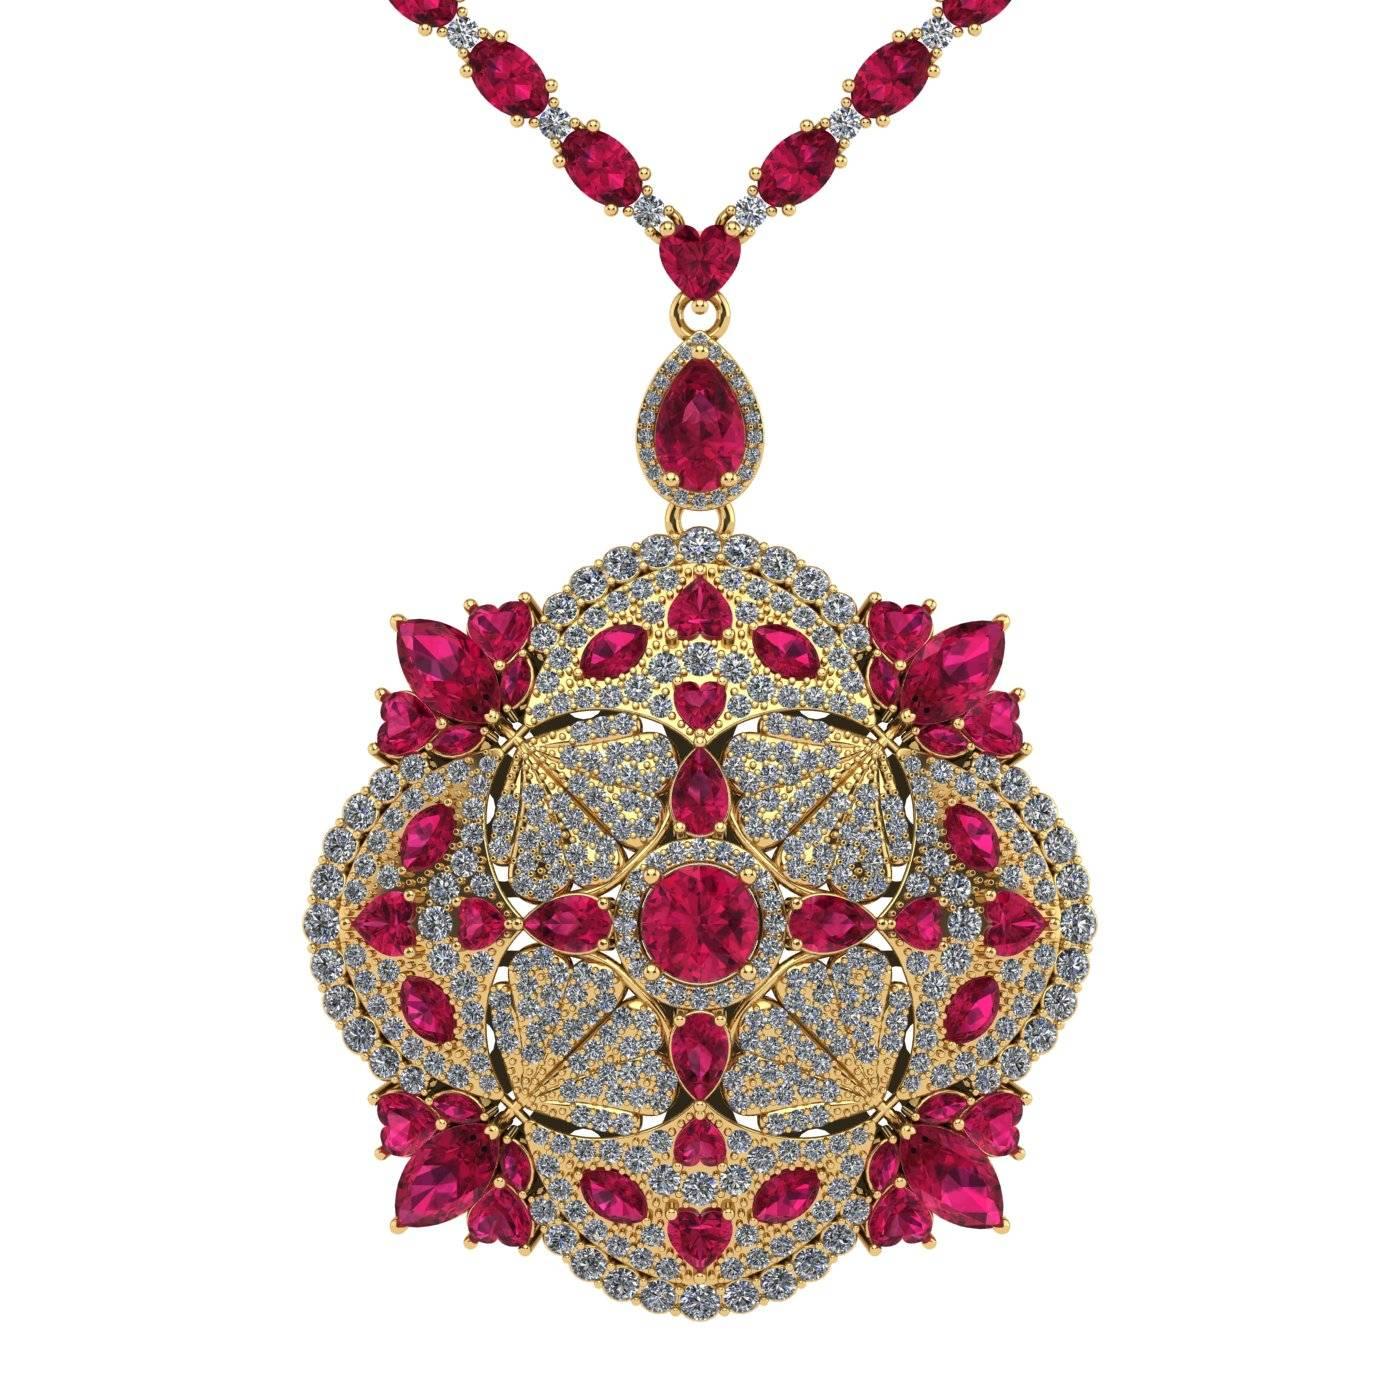 Collier de tennis contemporain à pendentif plume, en rubis et diamants, par Juliette Wooten